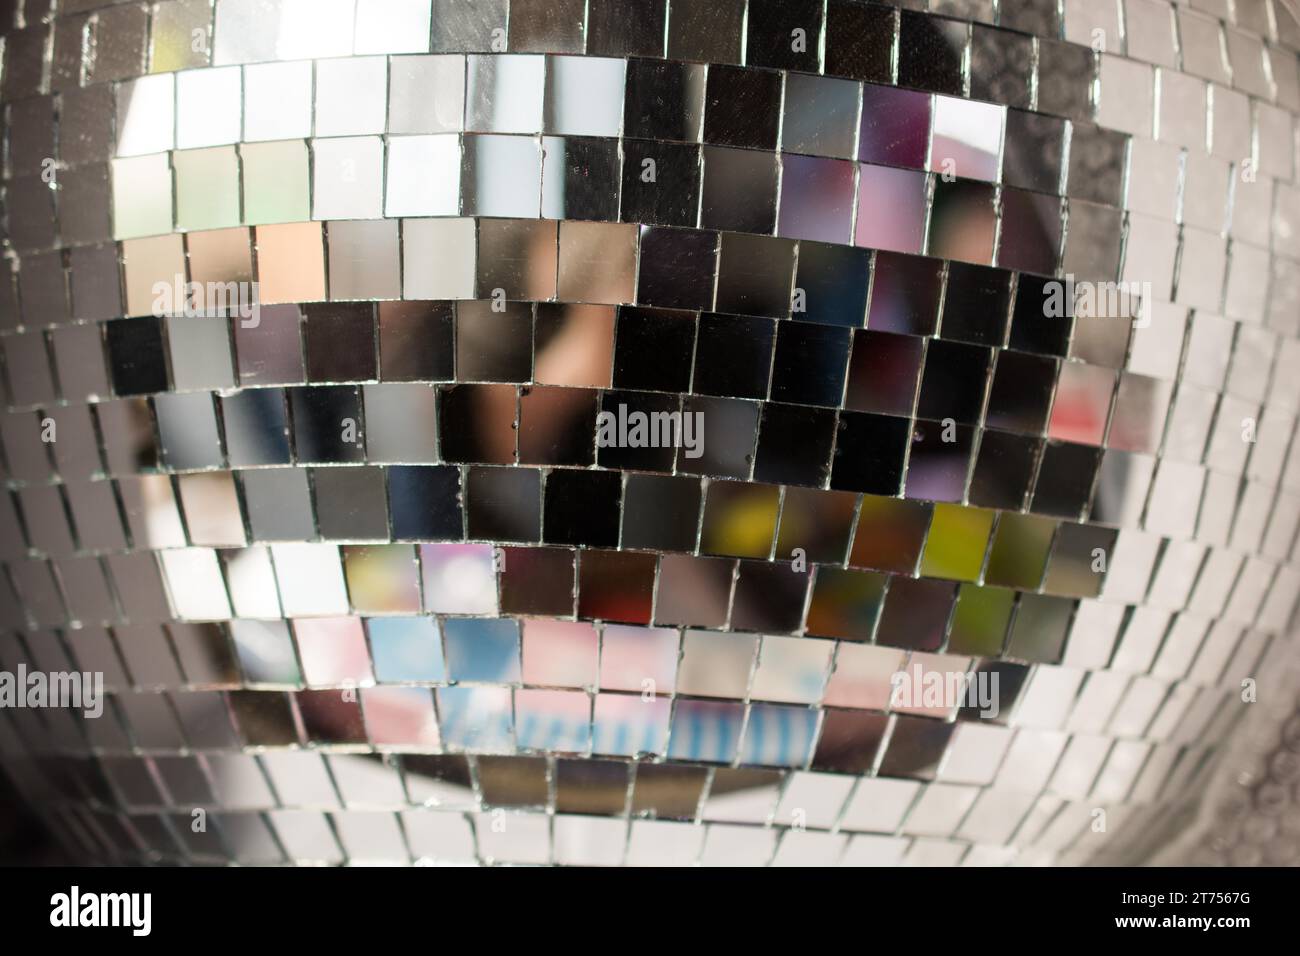 Bal disco avec des pièces de miroir pour danser dans un club de discothèque Banque D'Images